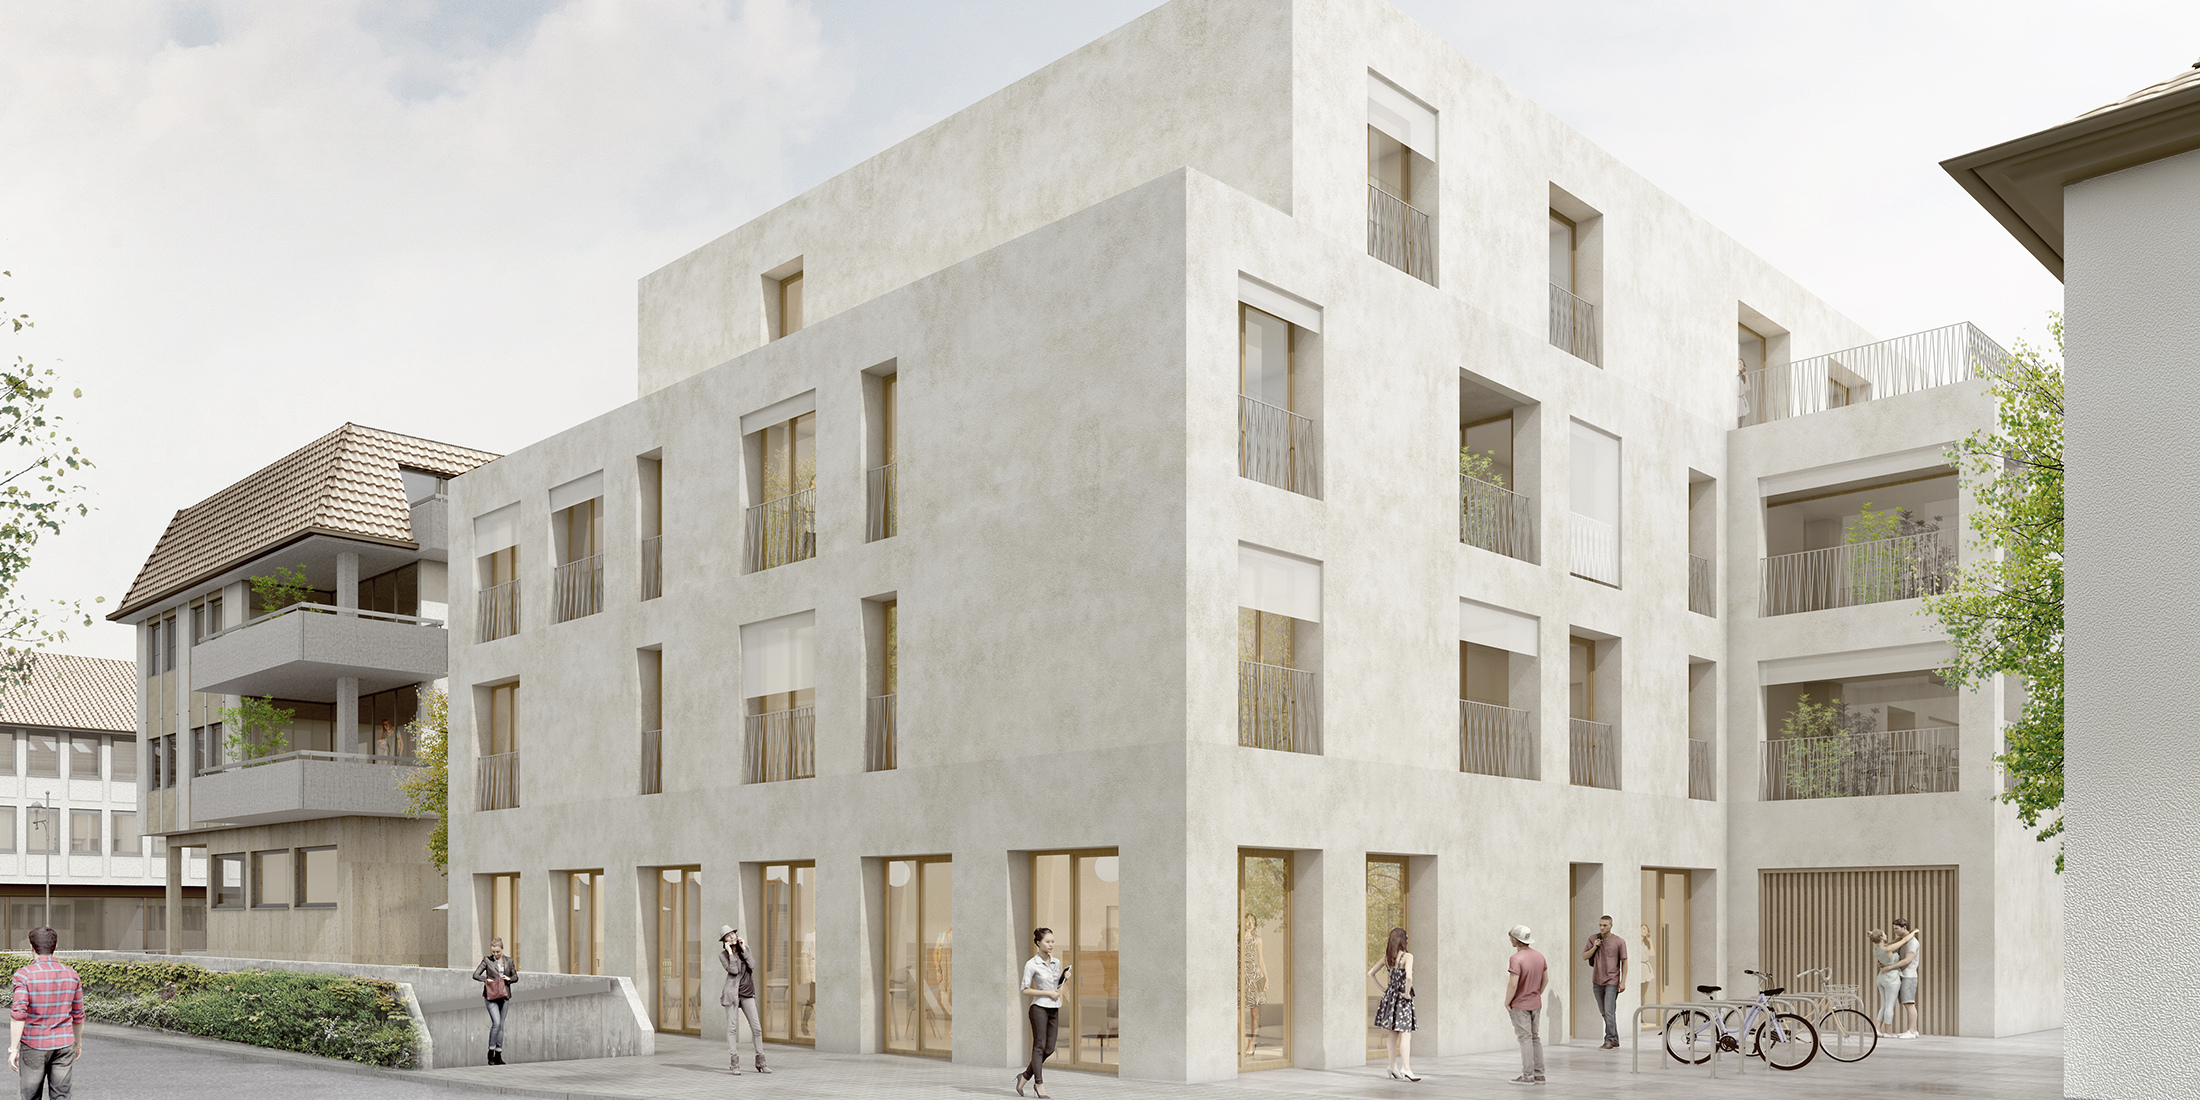 Wohnebauung_Wohn-undGeschäftshaus_Plochingen_Architektur_Herrmann+Bosch Architekten_Header